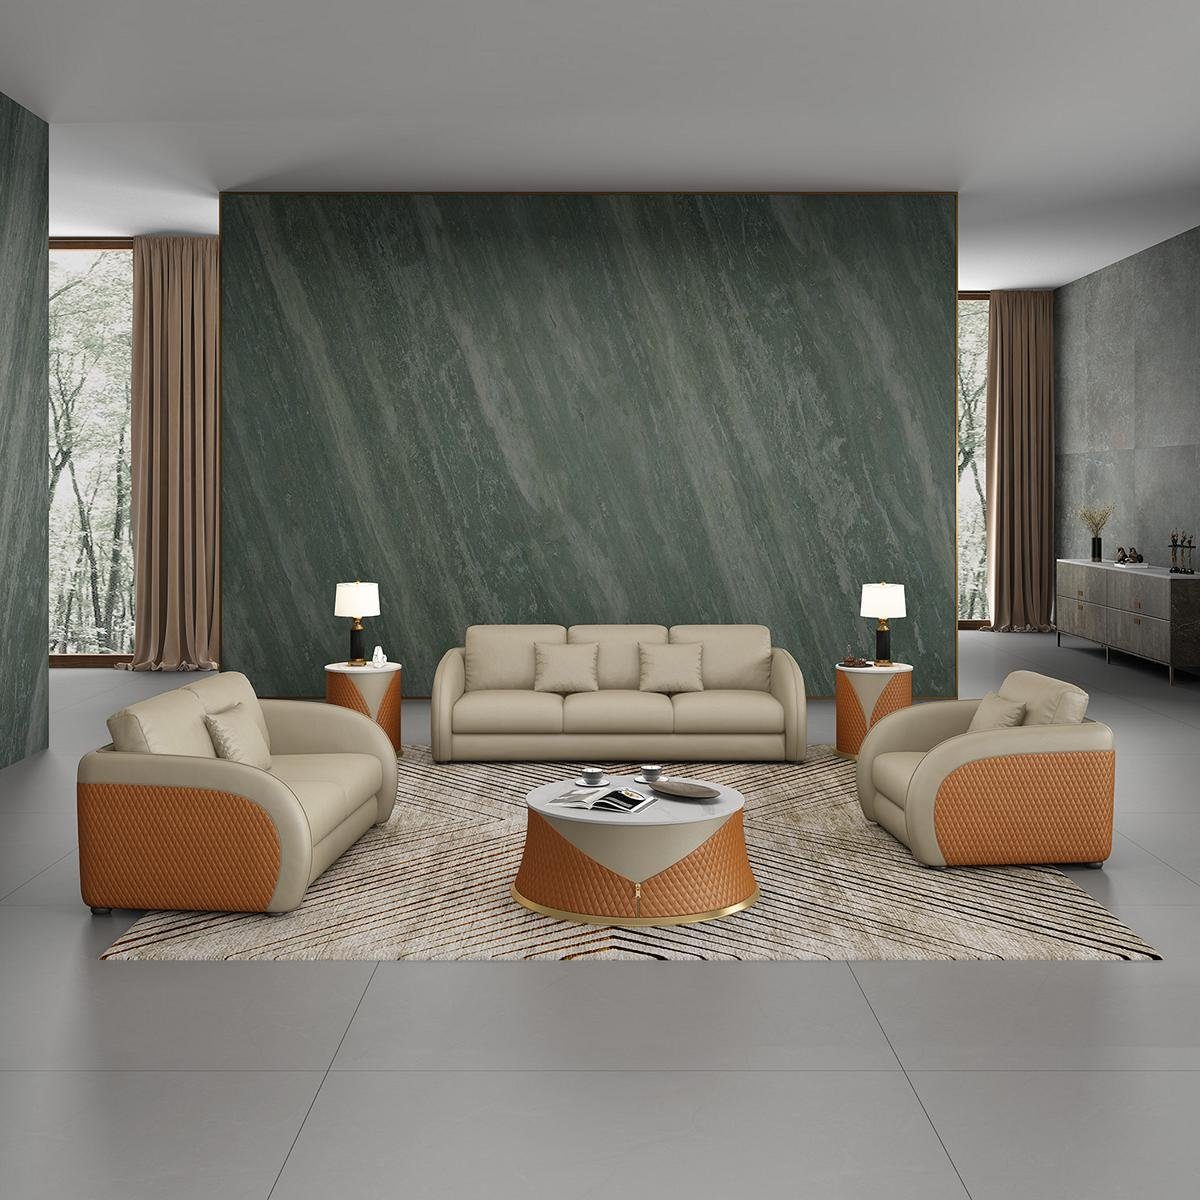 JVmoebel Wohnzimmer-Set, Sofagarnitur 3 2 1 Sitzer Set Design Sofa Polster Couchen Couch Grau/Orange